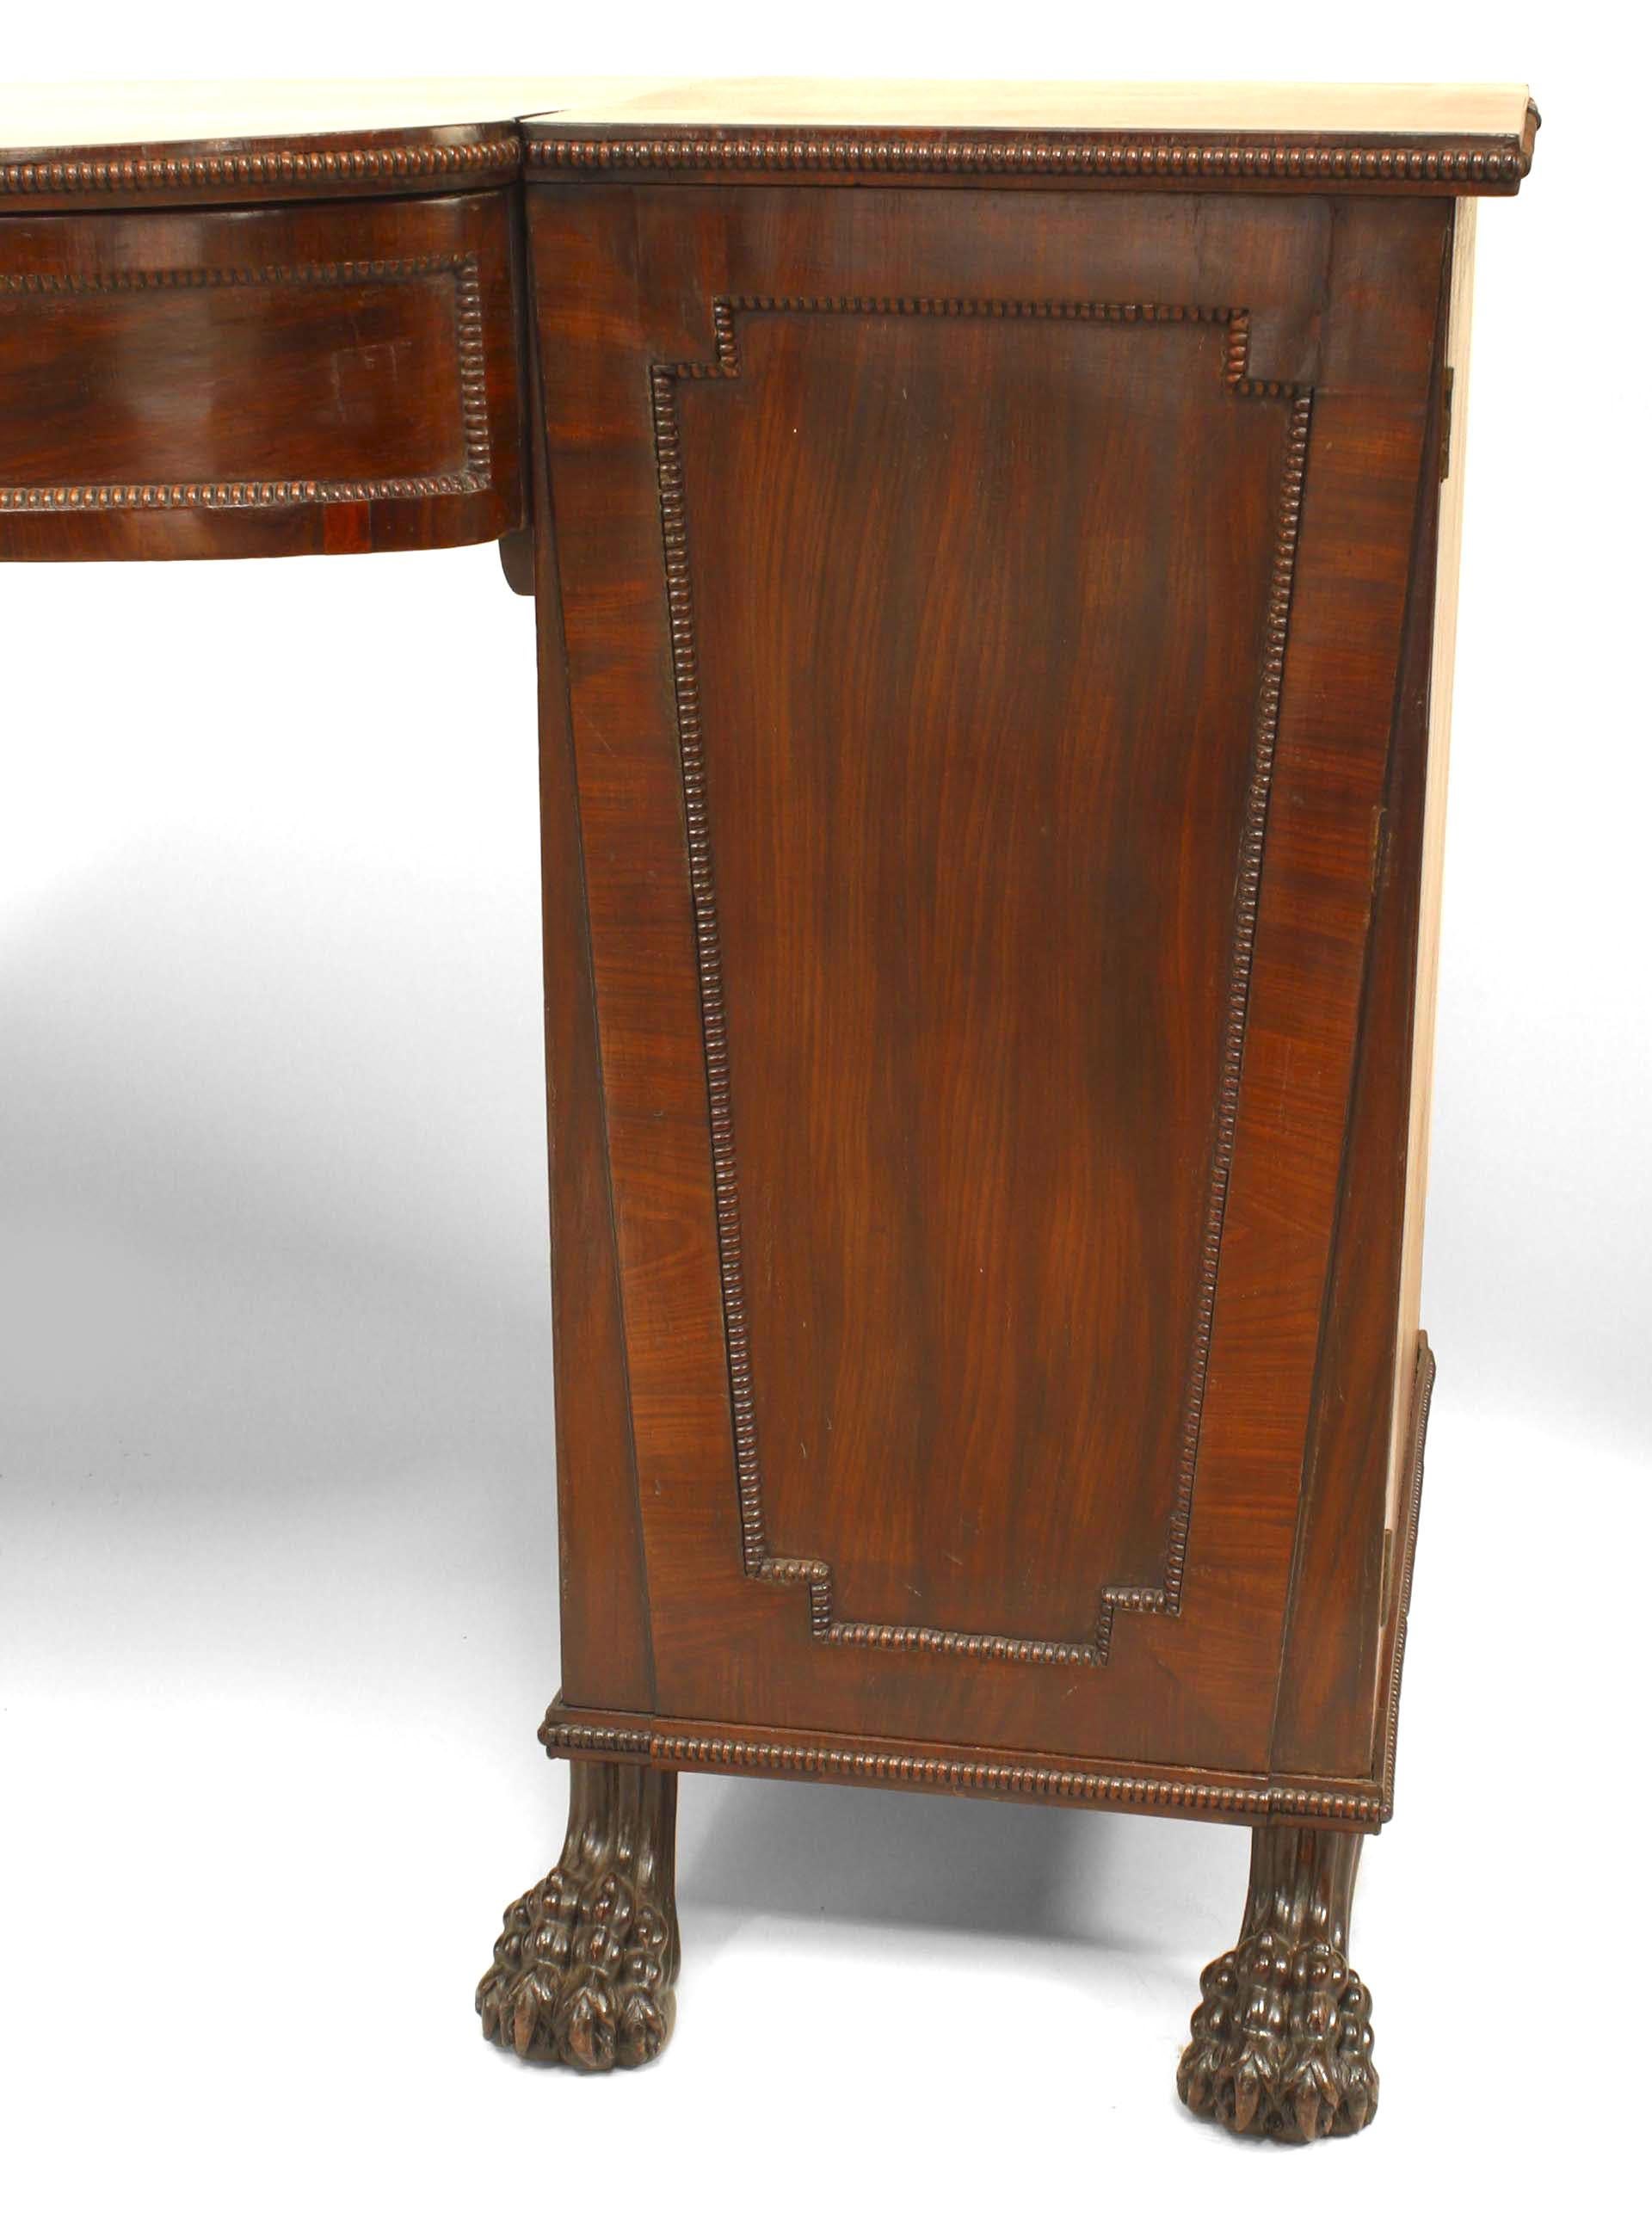 Buffet anglais géorgien (18/19e siècle) en acajou avec deux meubles latéraux à portes reposant sur des pieds griffus.
